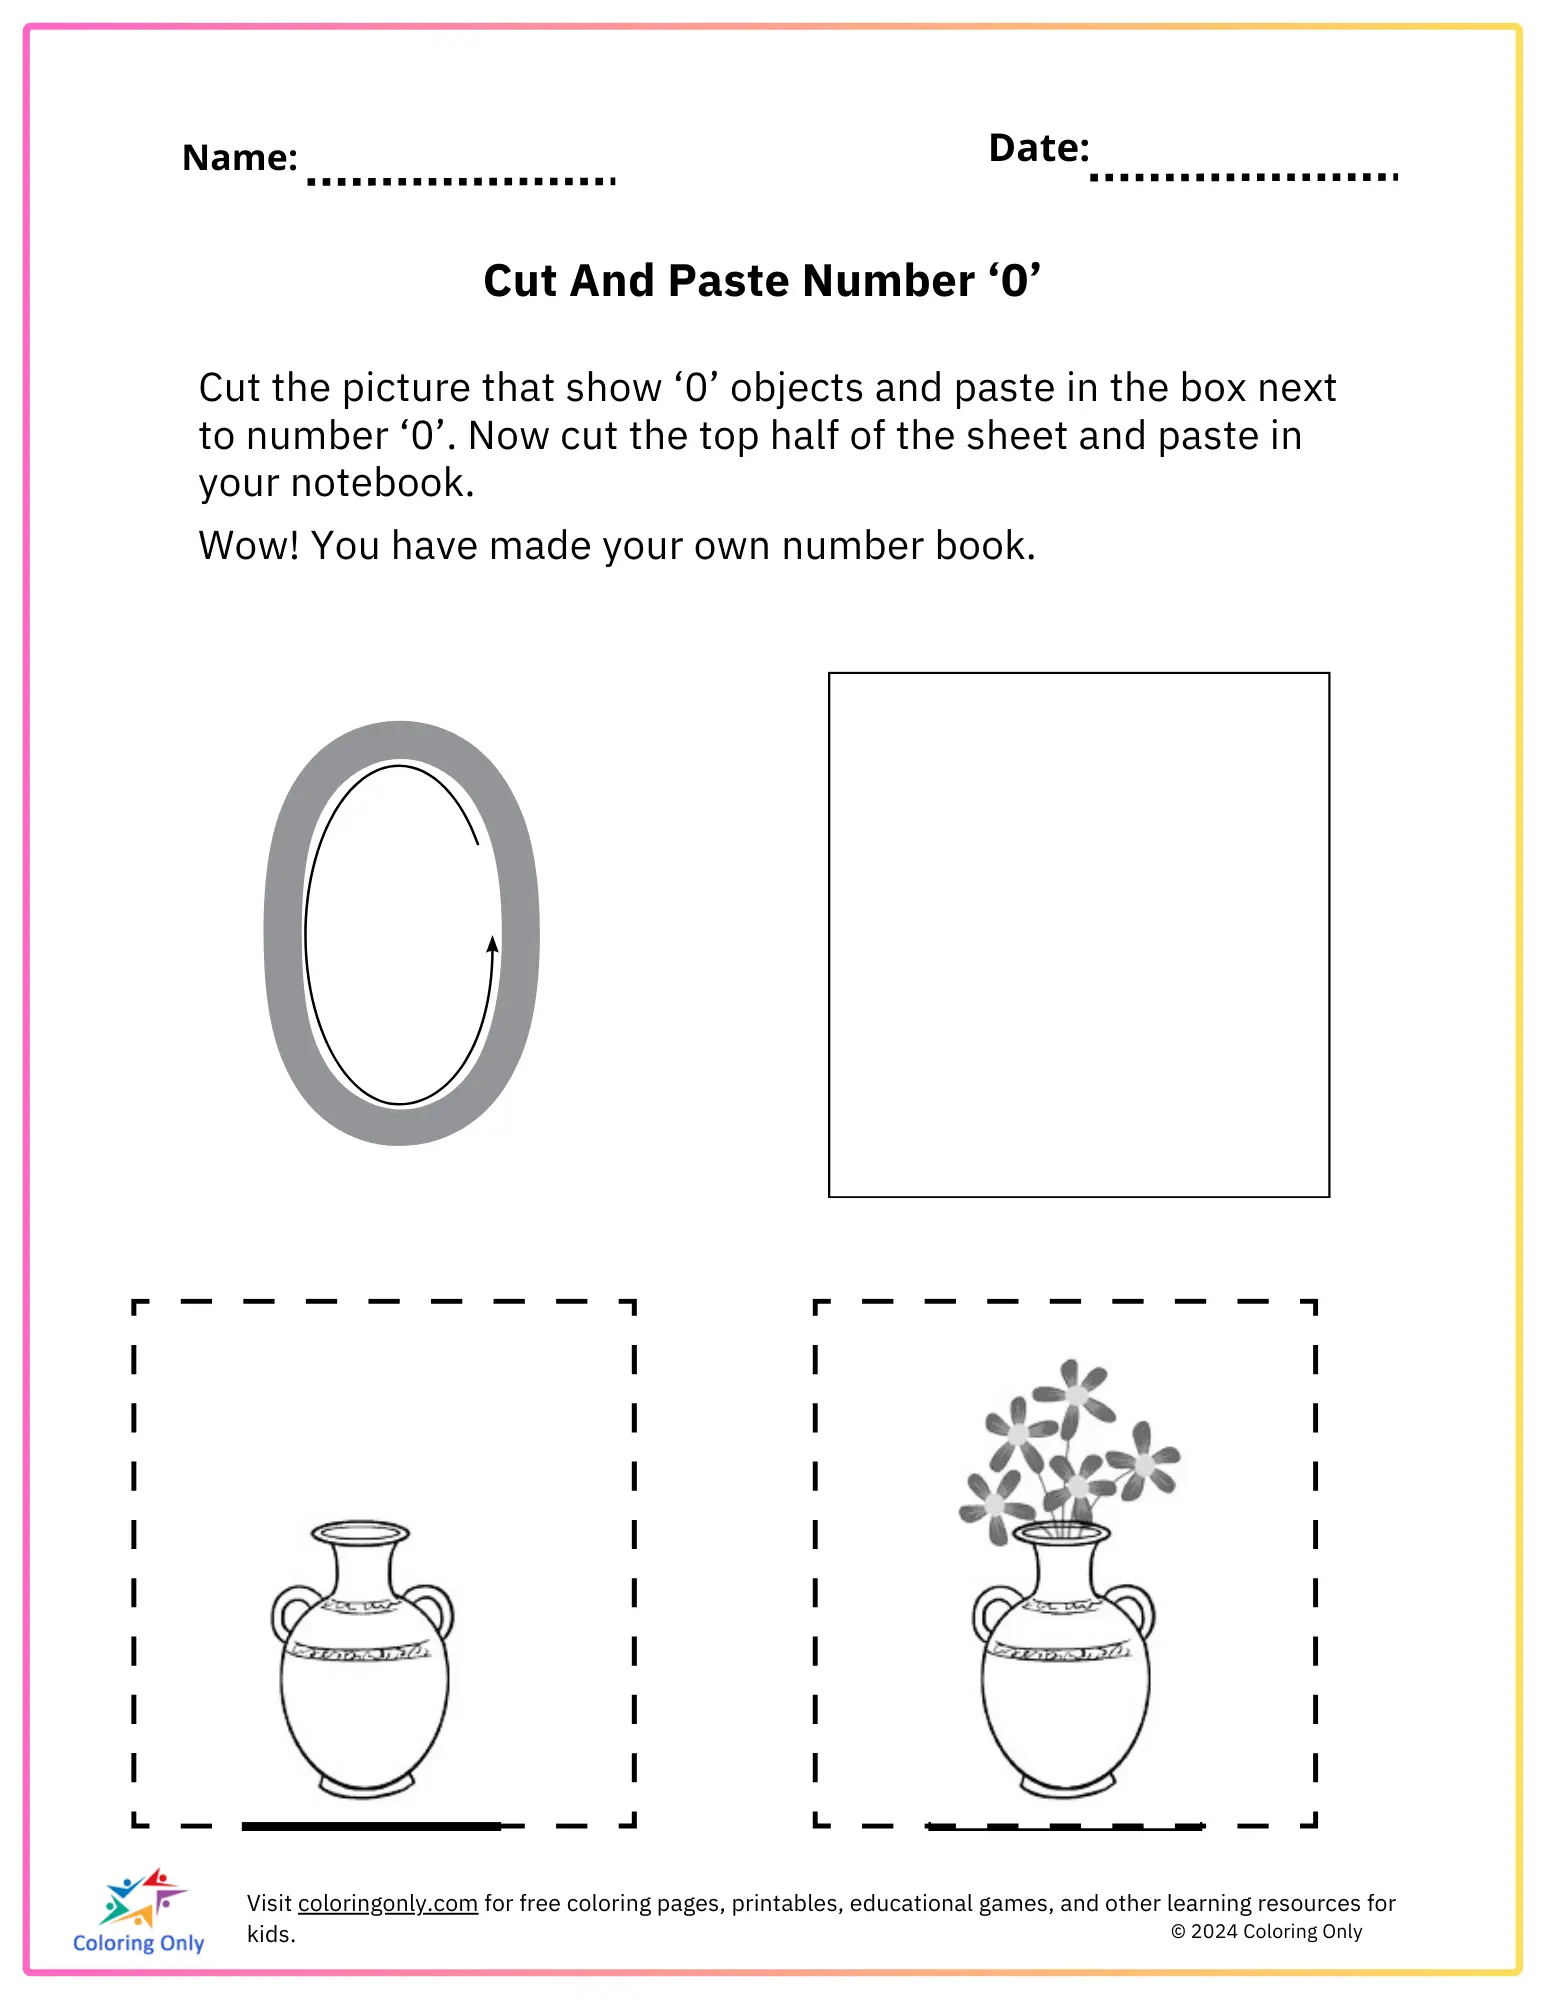 Cut And Paste Number ‘0’ Free Printable Worksheet